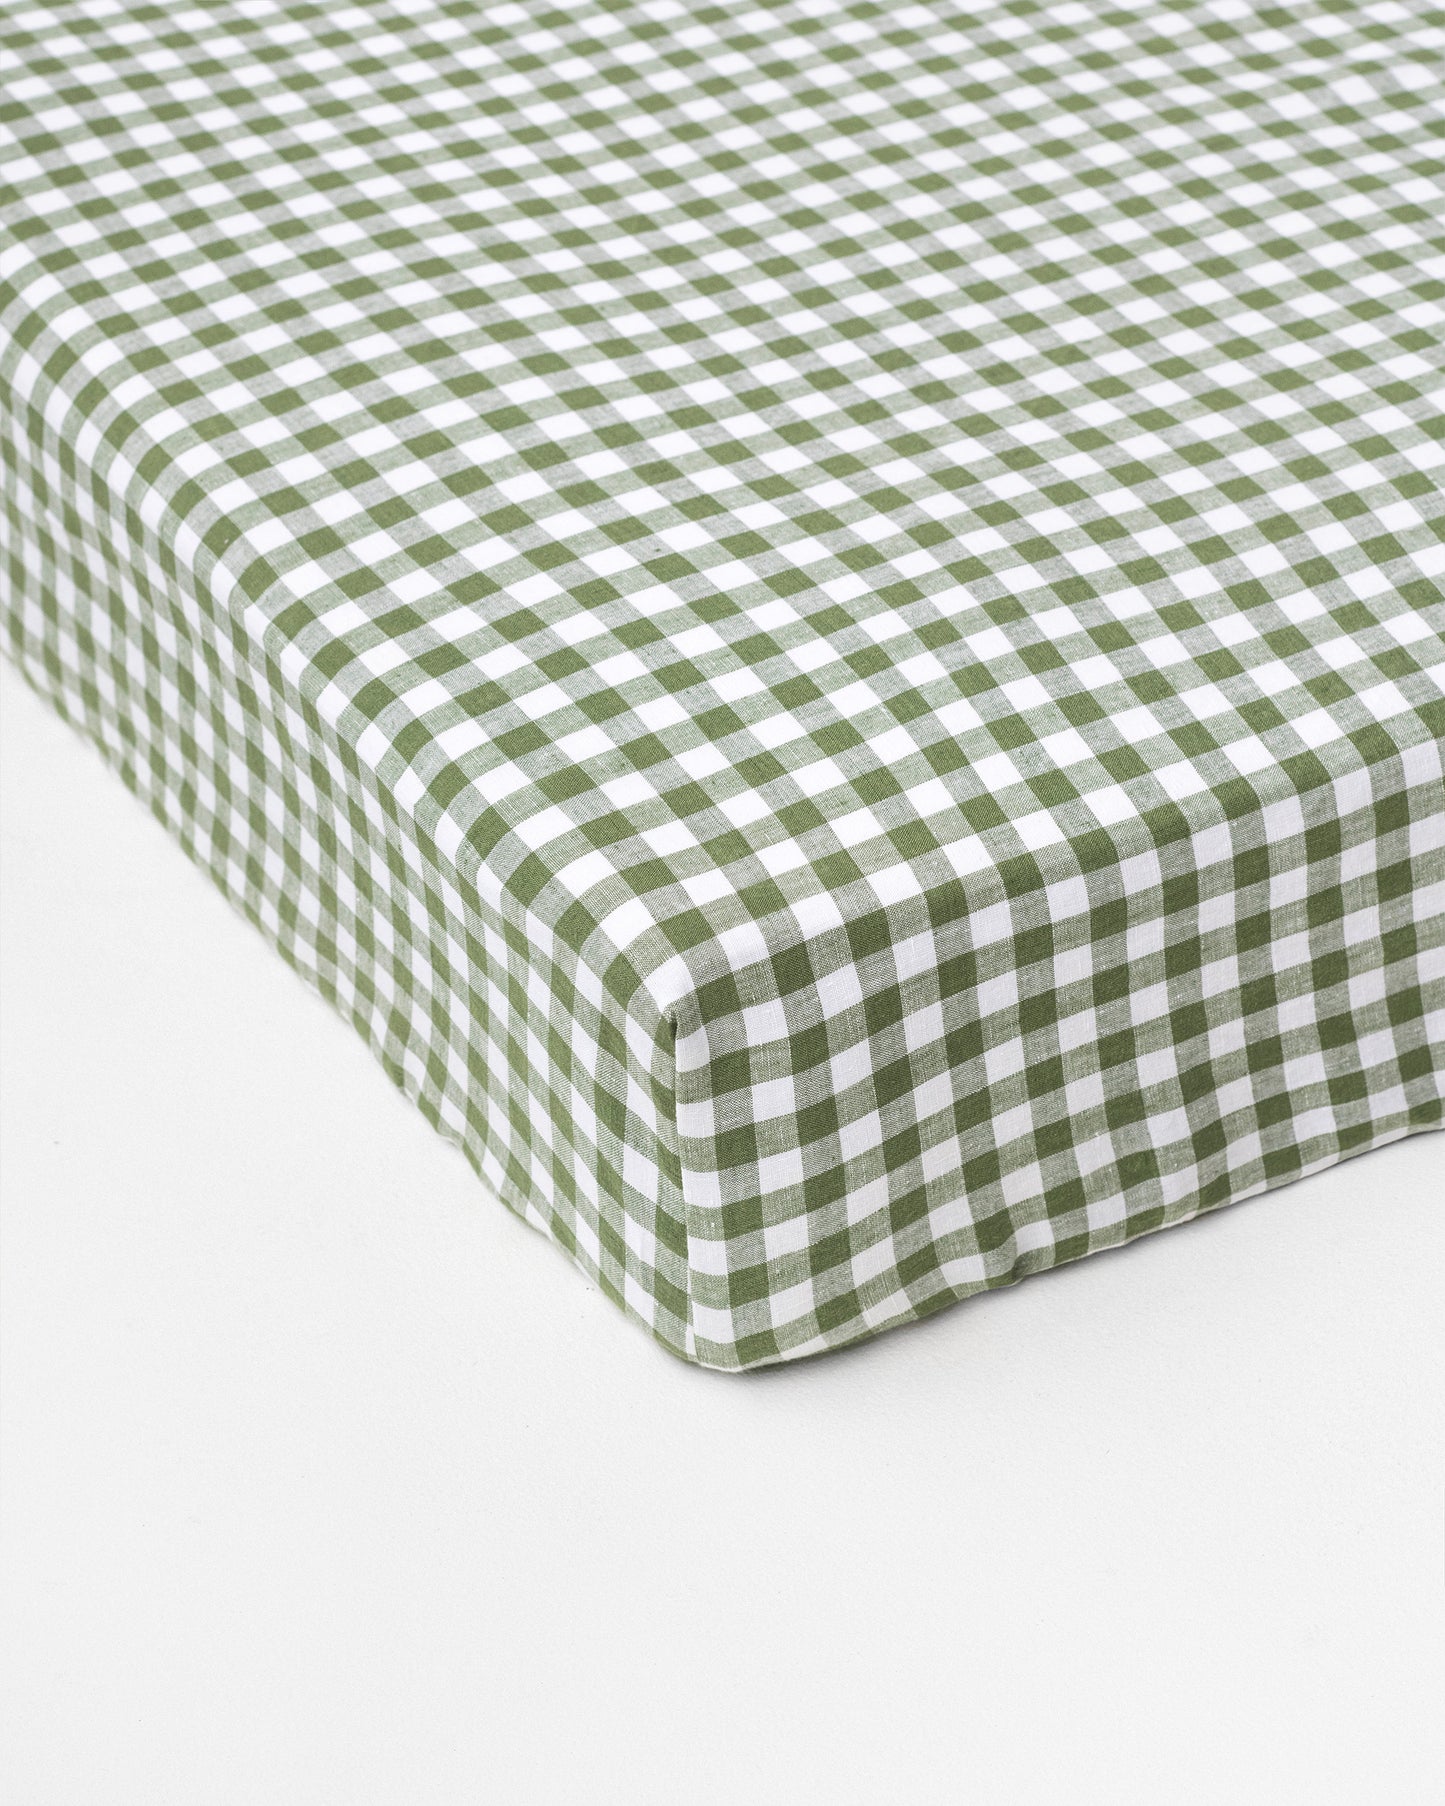 Forest green gingham linen fitted sheet - MagicLinen